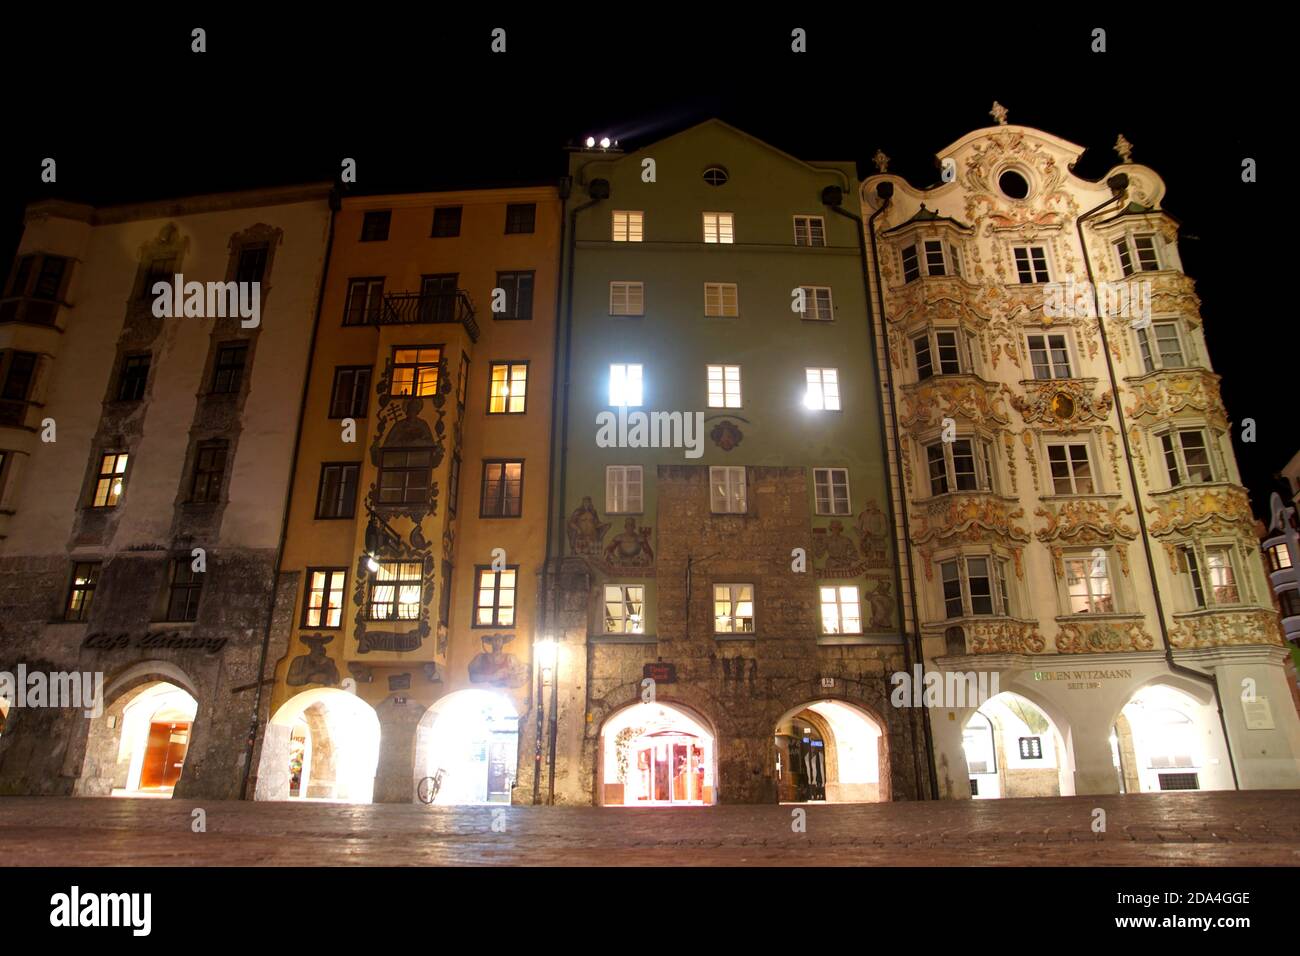 The historic houses on Duke Friedrich Street in Innsbruck, Austria Stock Photo